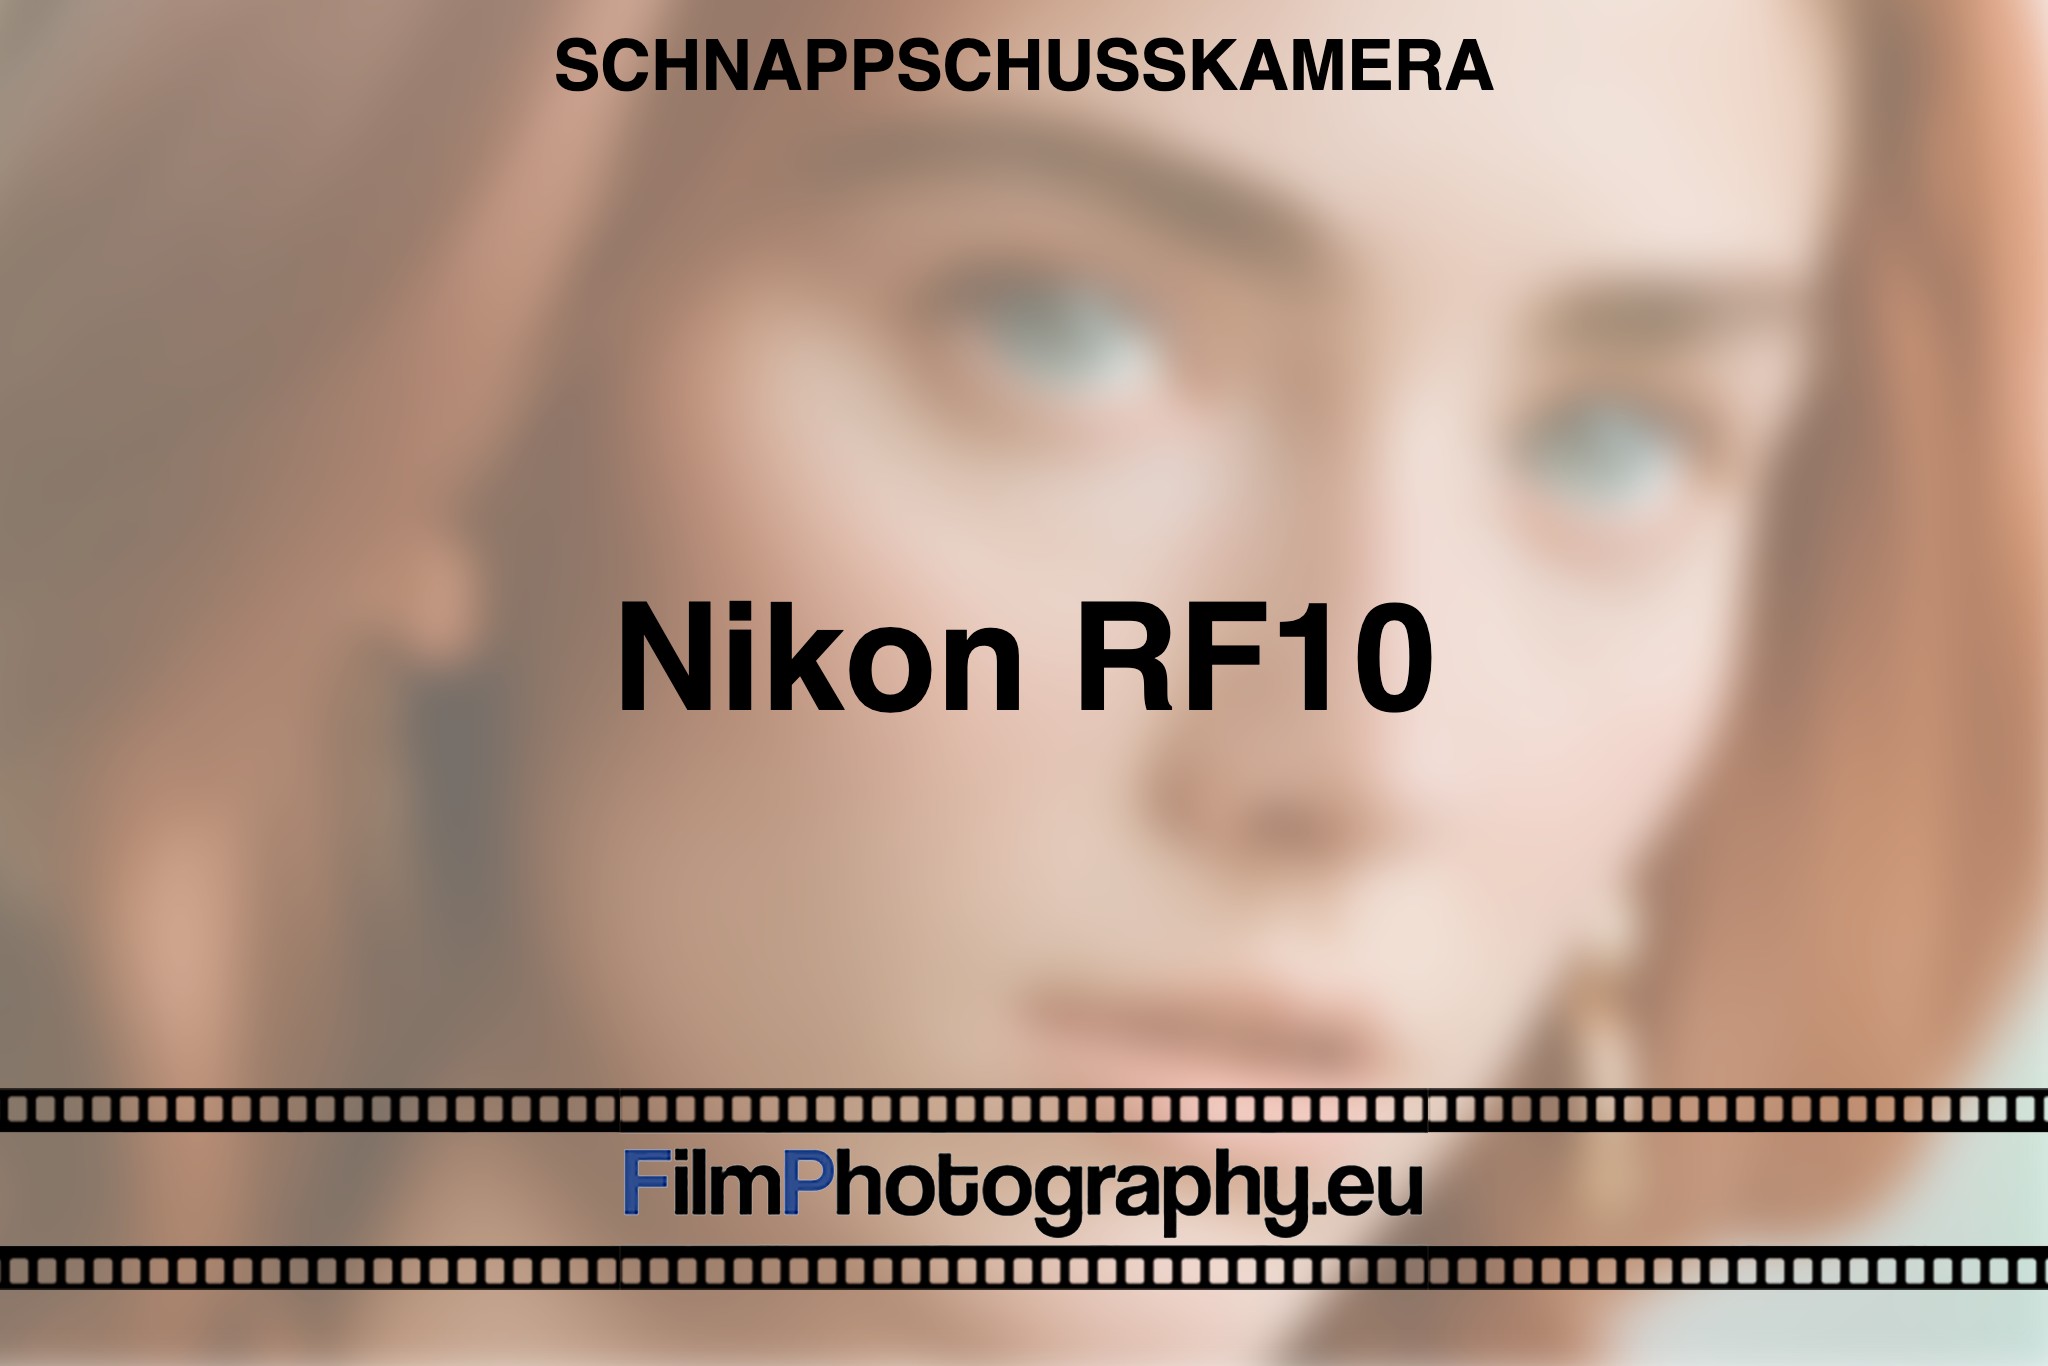 nikon-rf10-schnappschusskamera-bnv